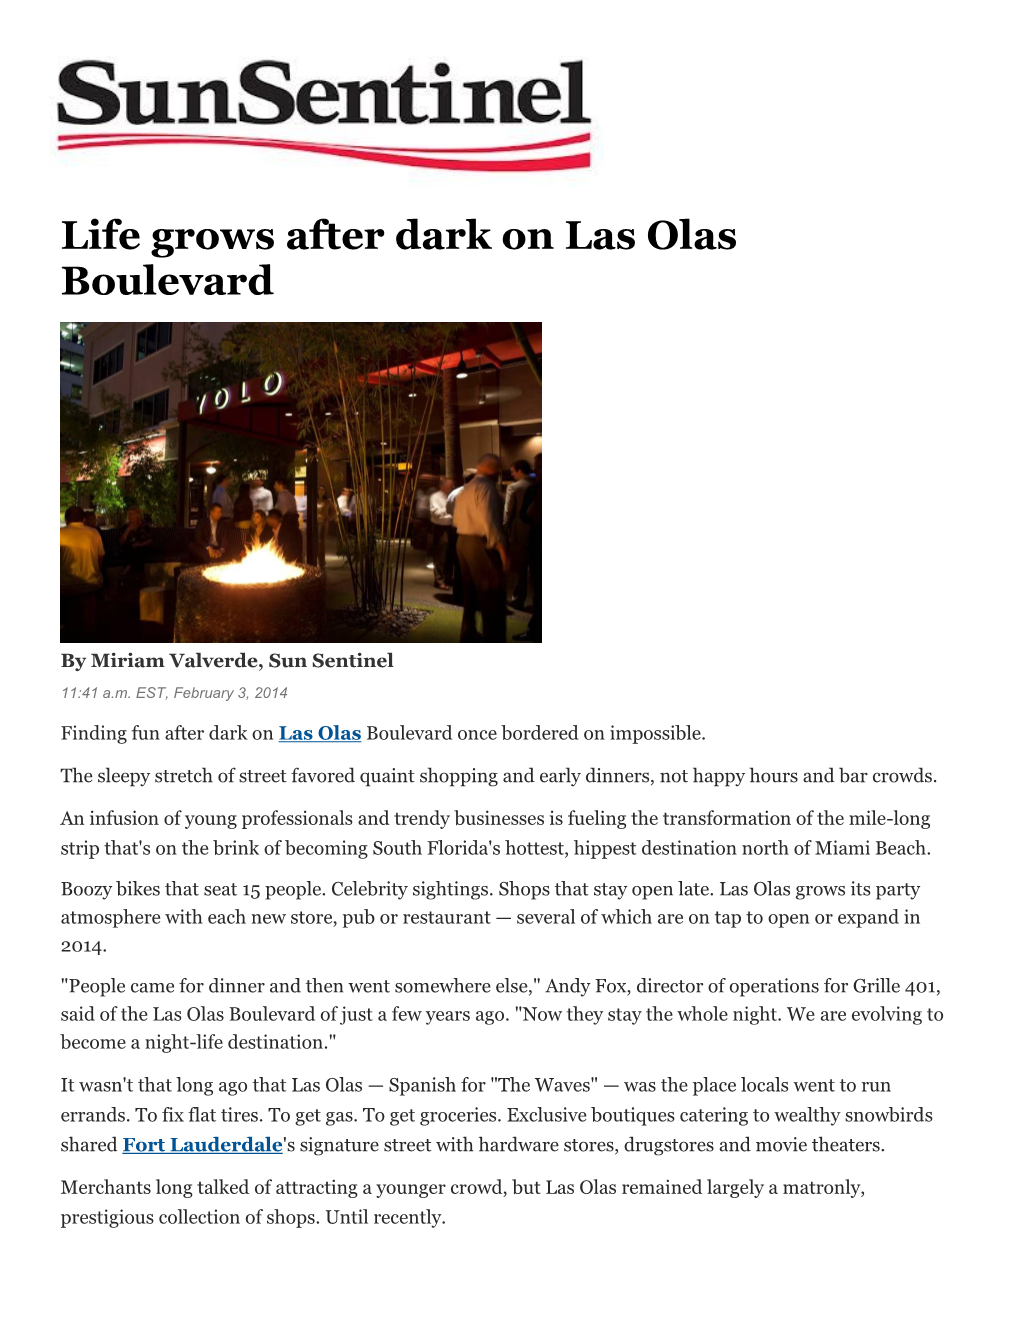 Life Grows After Dark on Las Olas Boulevard